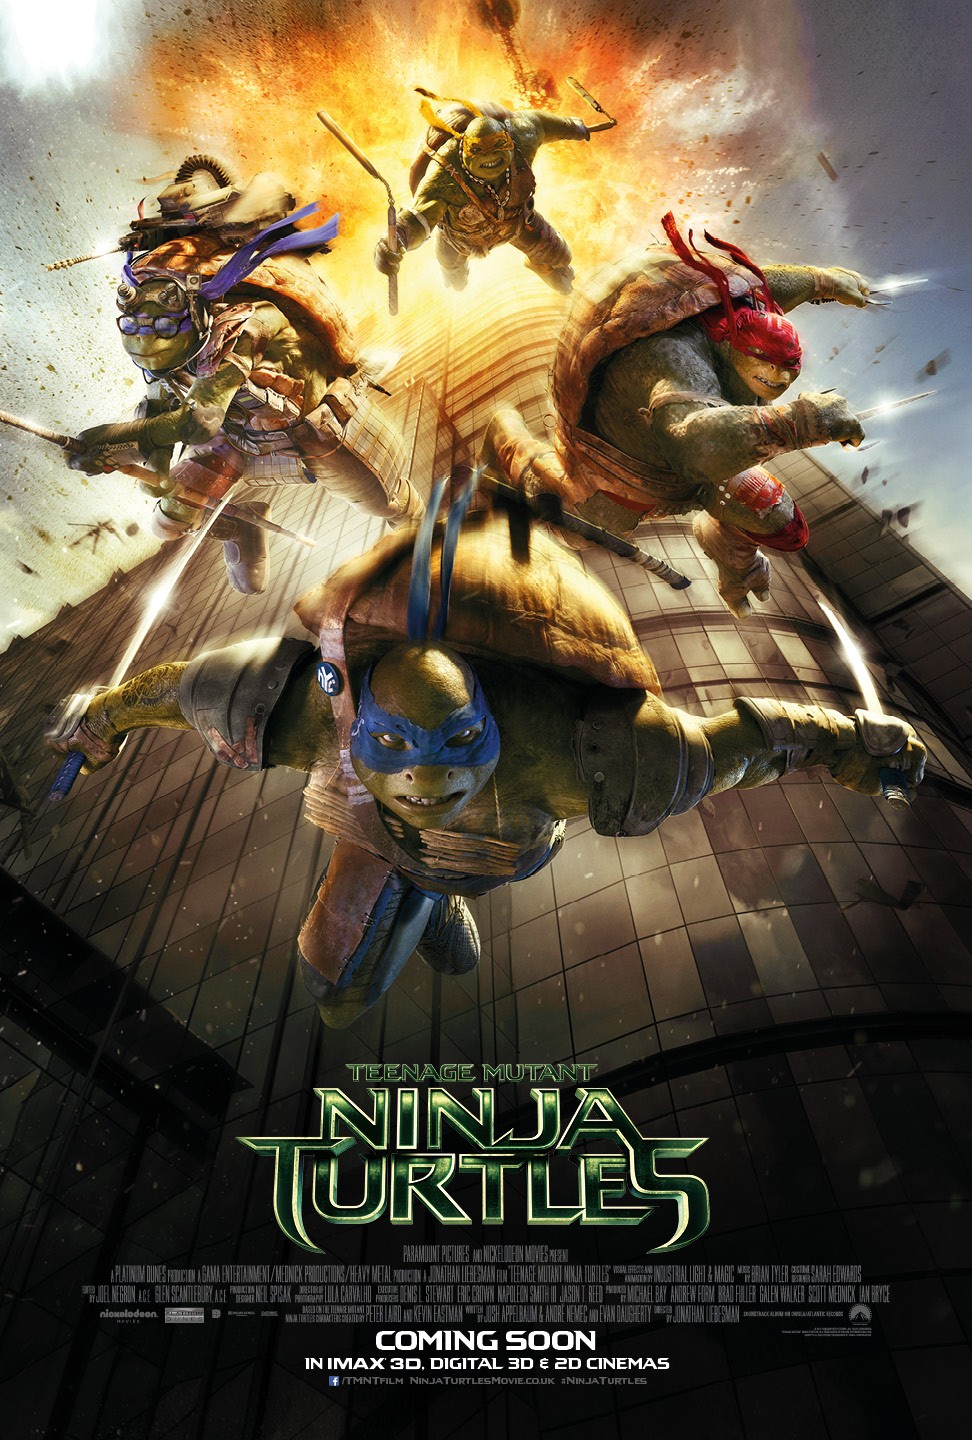 Extra Large Movie Poster Image for Teenage Mutant Ninja Turtles (#14 of 22)